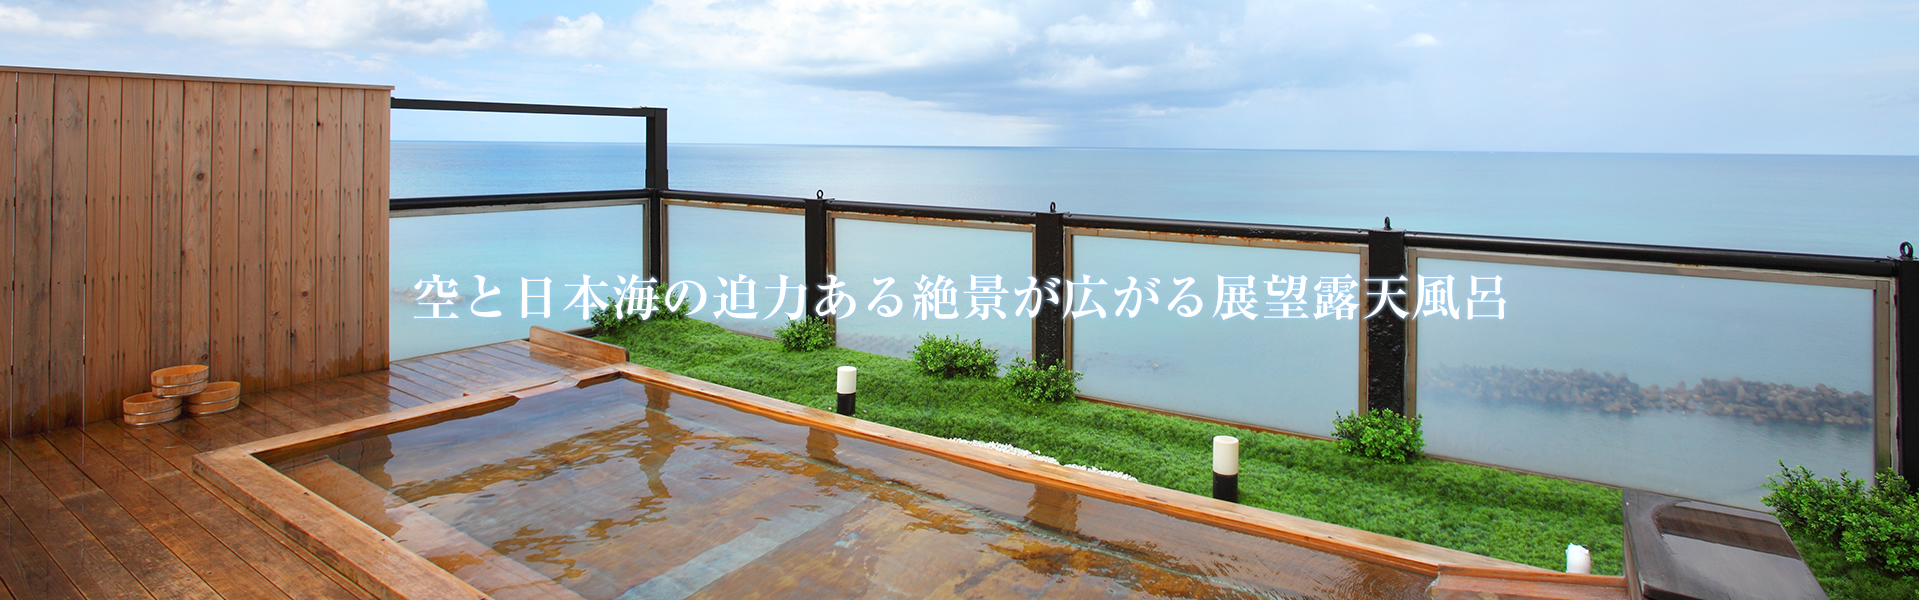 空と日本海の迫力ある絶景が広がる展望露天風呂